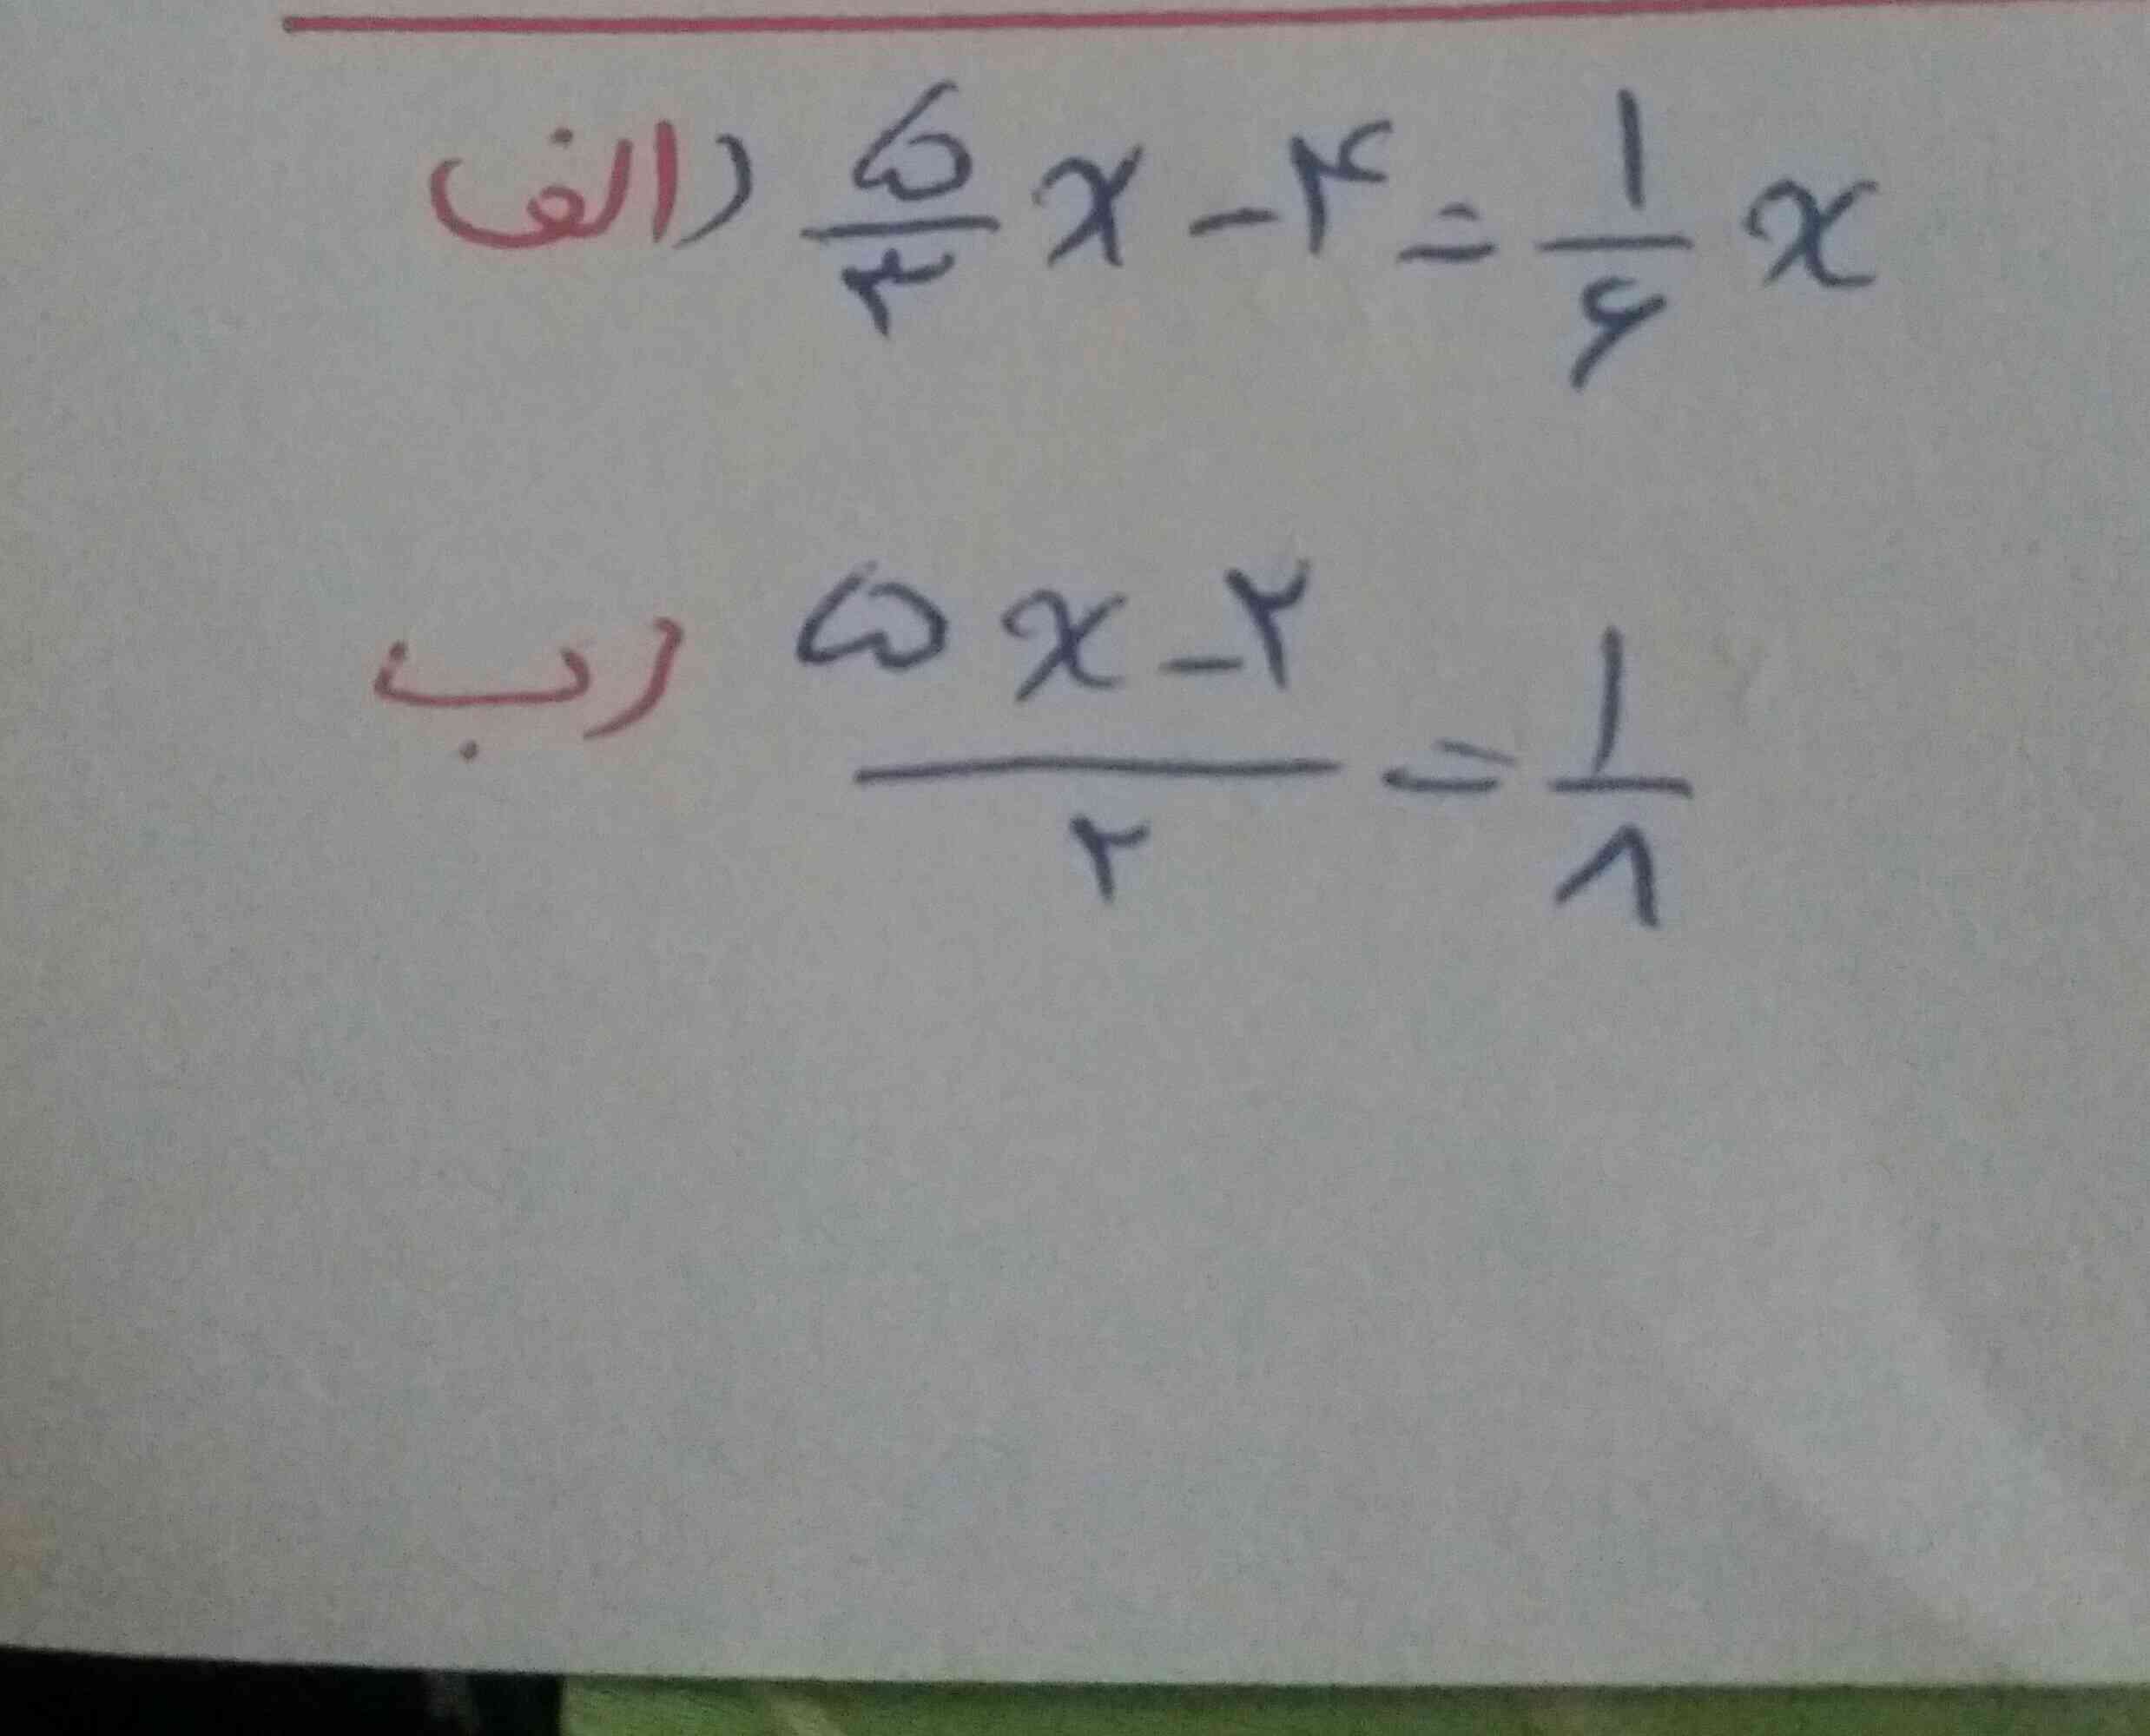 سلام بچه ها 
لطفا این دوتا معادله رو درست برام حل کنید عجله دارم 